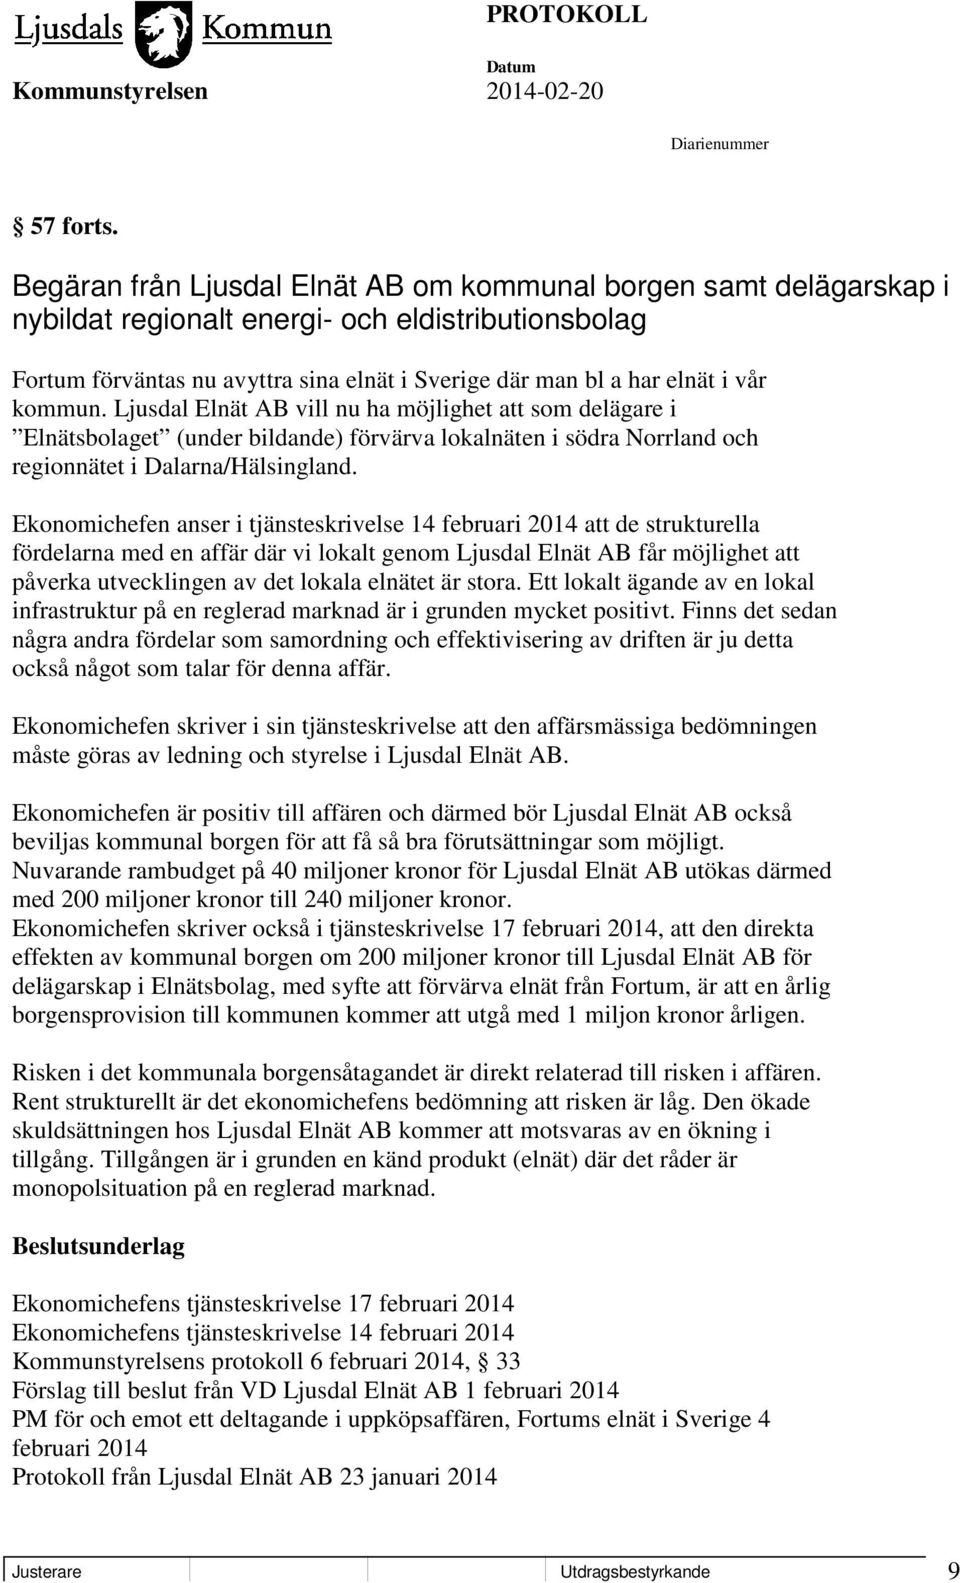 kommun. Ljusdal Elnät AB vill nu ha möjlighet att som delägare i Elnätsbolaget (under bildande) förvärva lokalnäten i södra Norrland och regionnätet i Dalarna/Hälsingland.